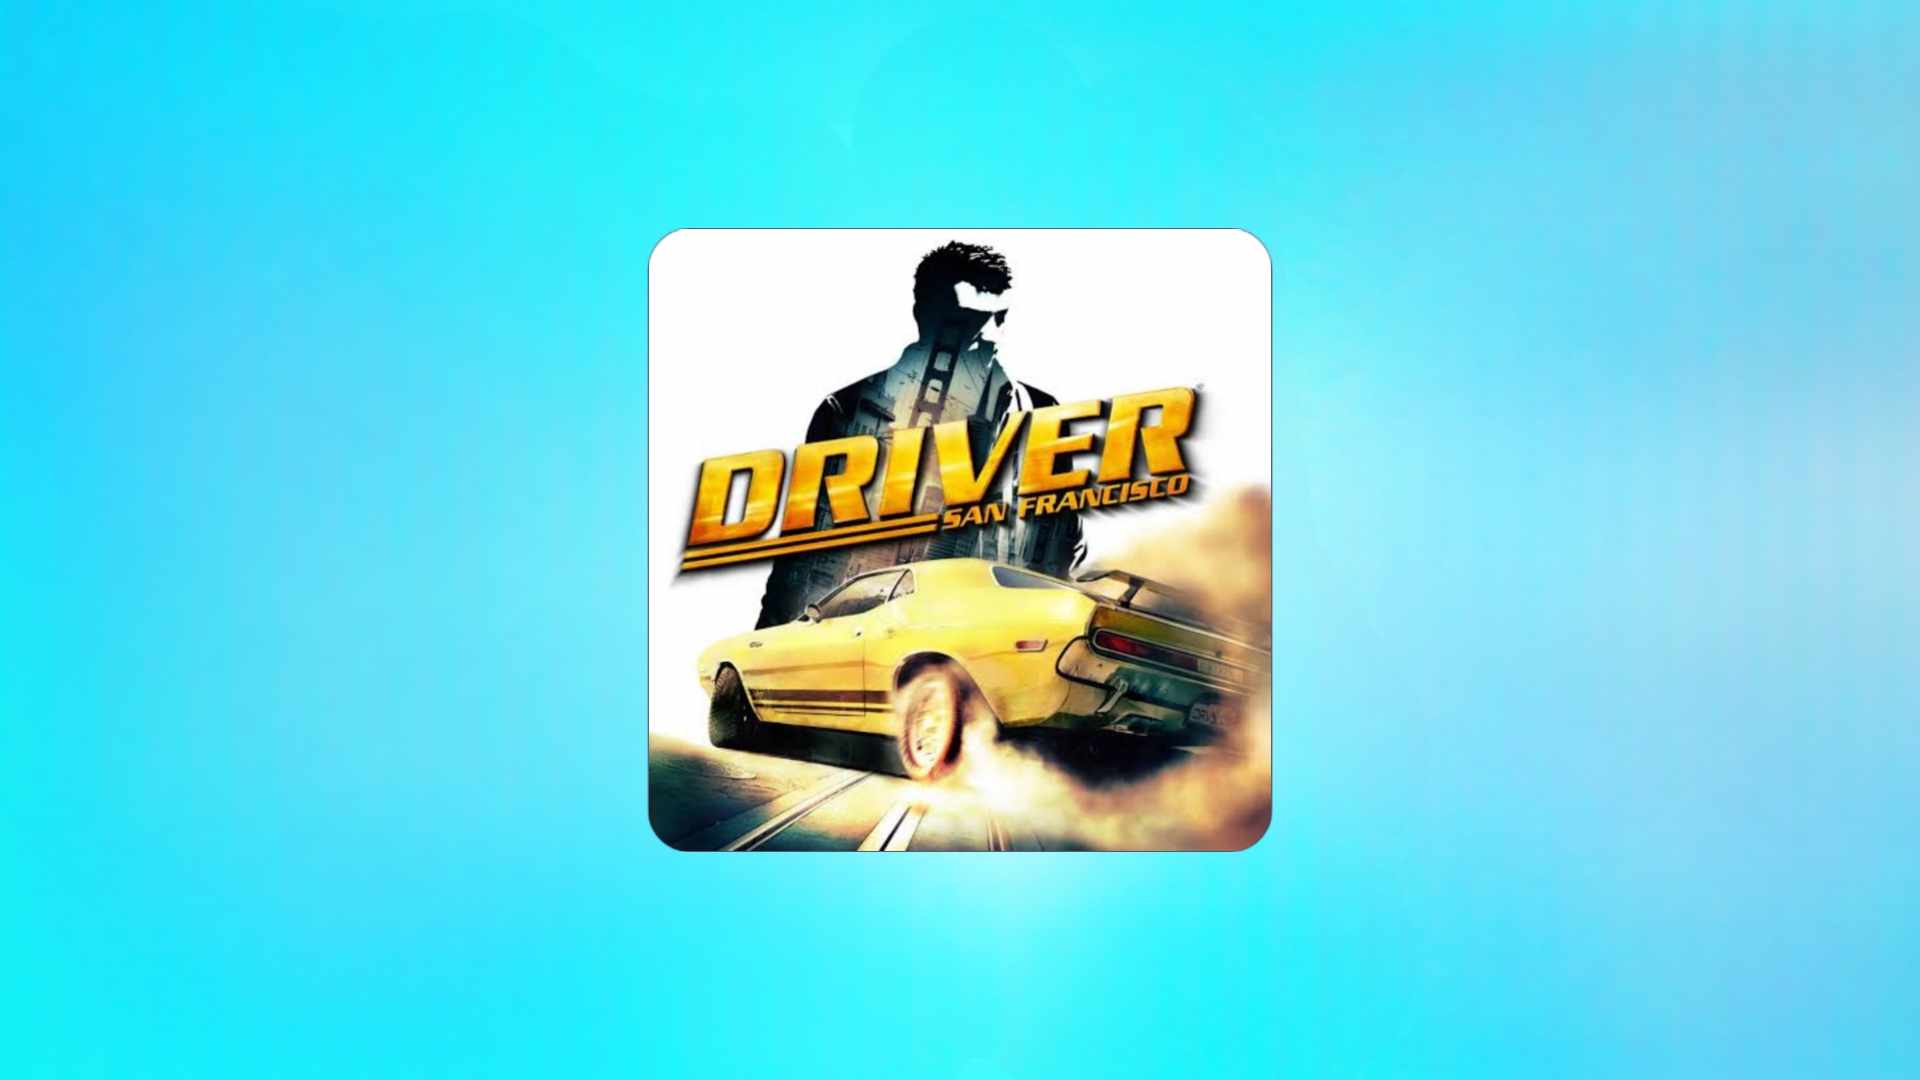 הורד את המשחק Driver San Francisco 2024 למחשב בחינם